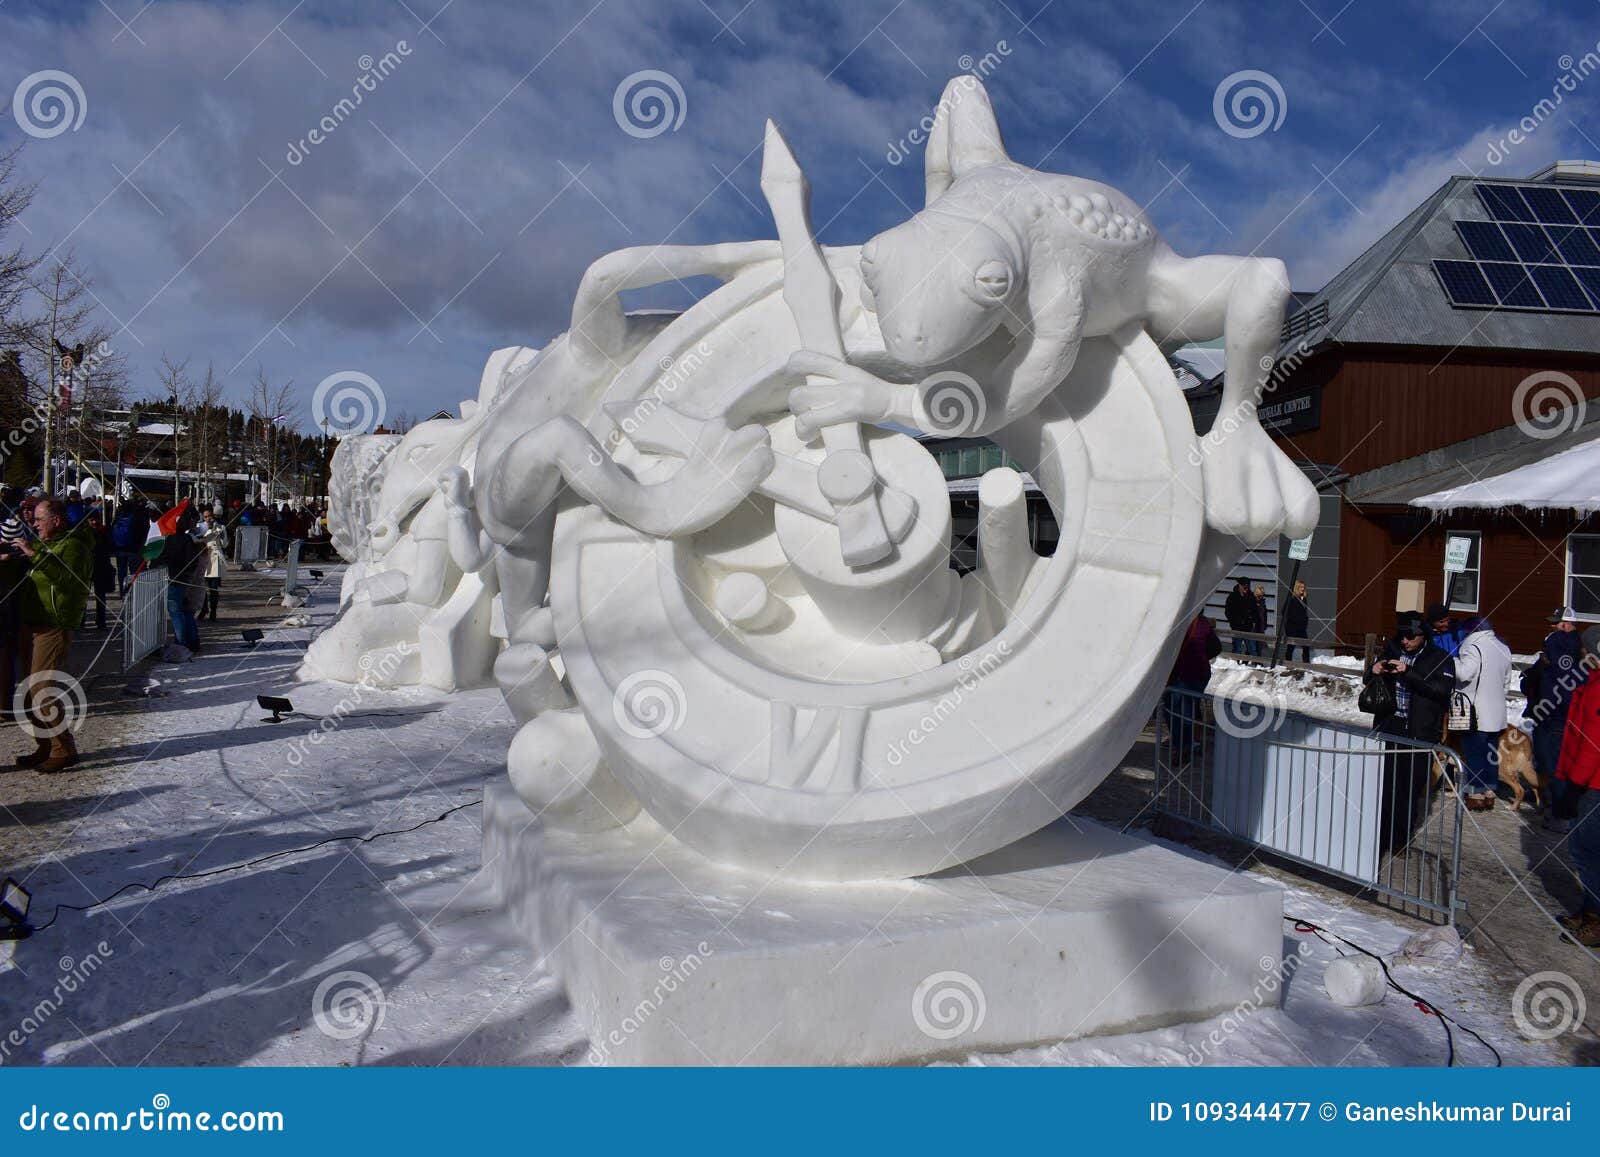 Breckenridge, Колорадо, США: 28-ое января 2018: Скульптура снега 2018 времен командой Монголией. Чемпионаты скульптуры снега Breckenridge международные - художники снега со всего мира состязаются январь в Breckenridge на международных чемпионатах скульптуры снега